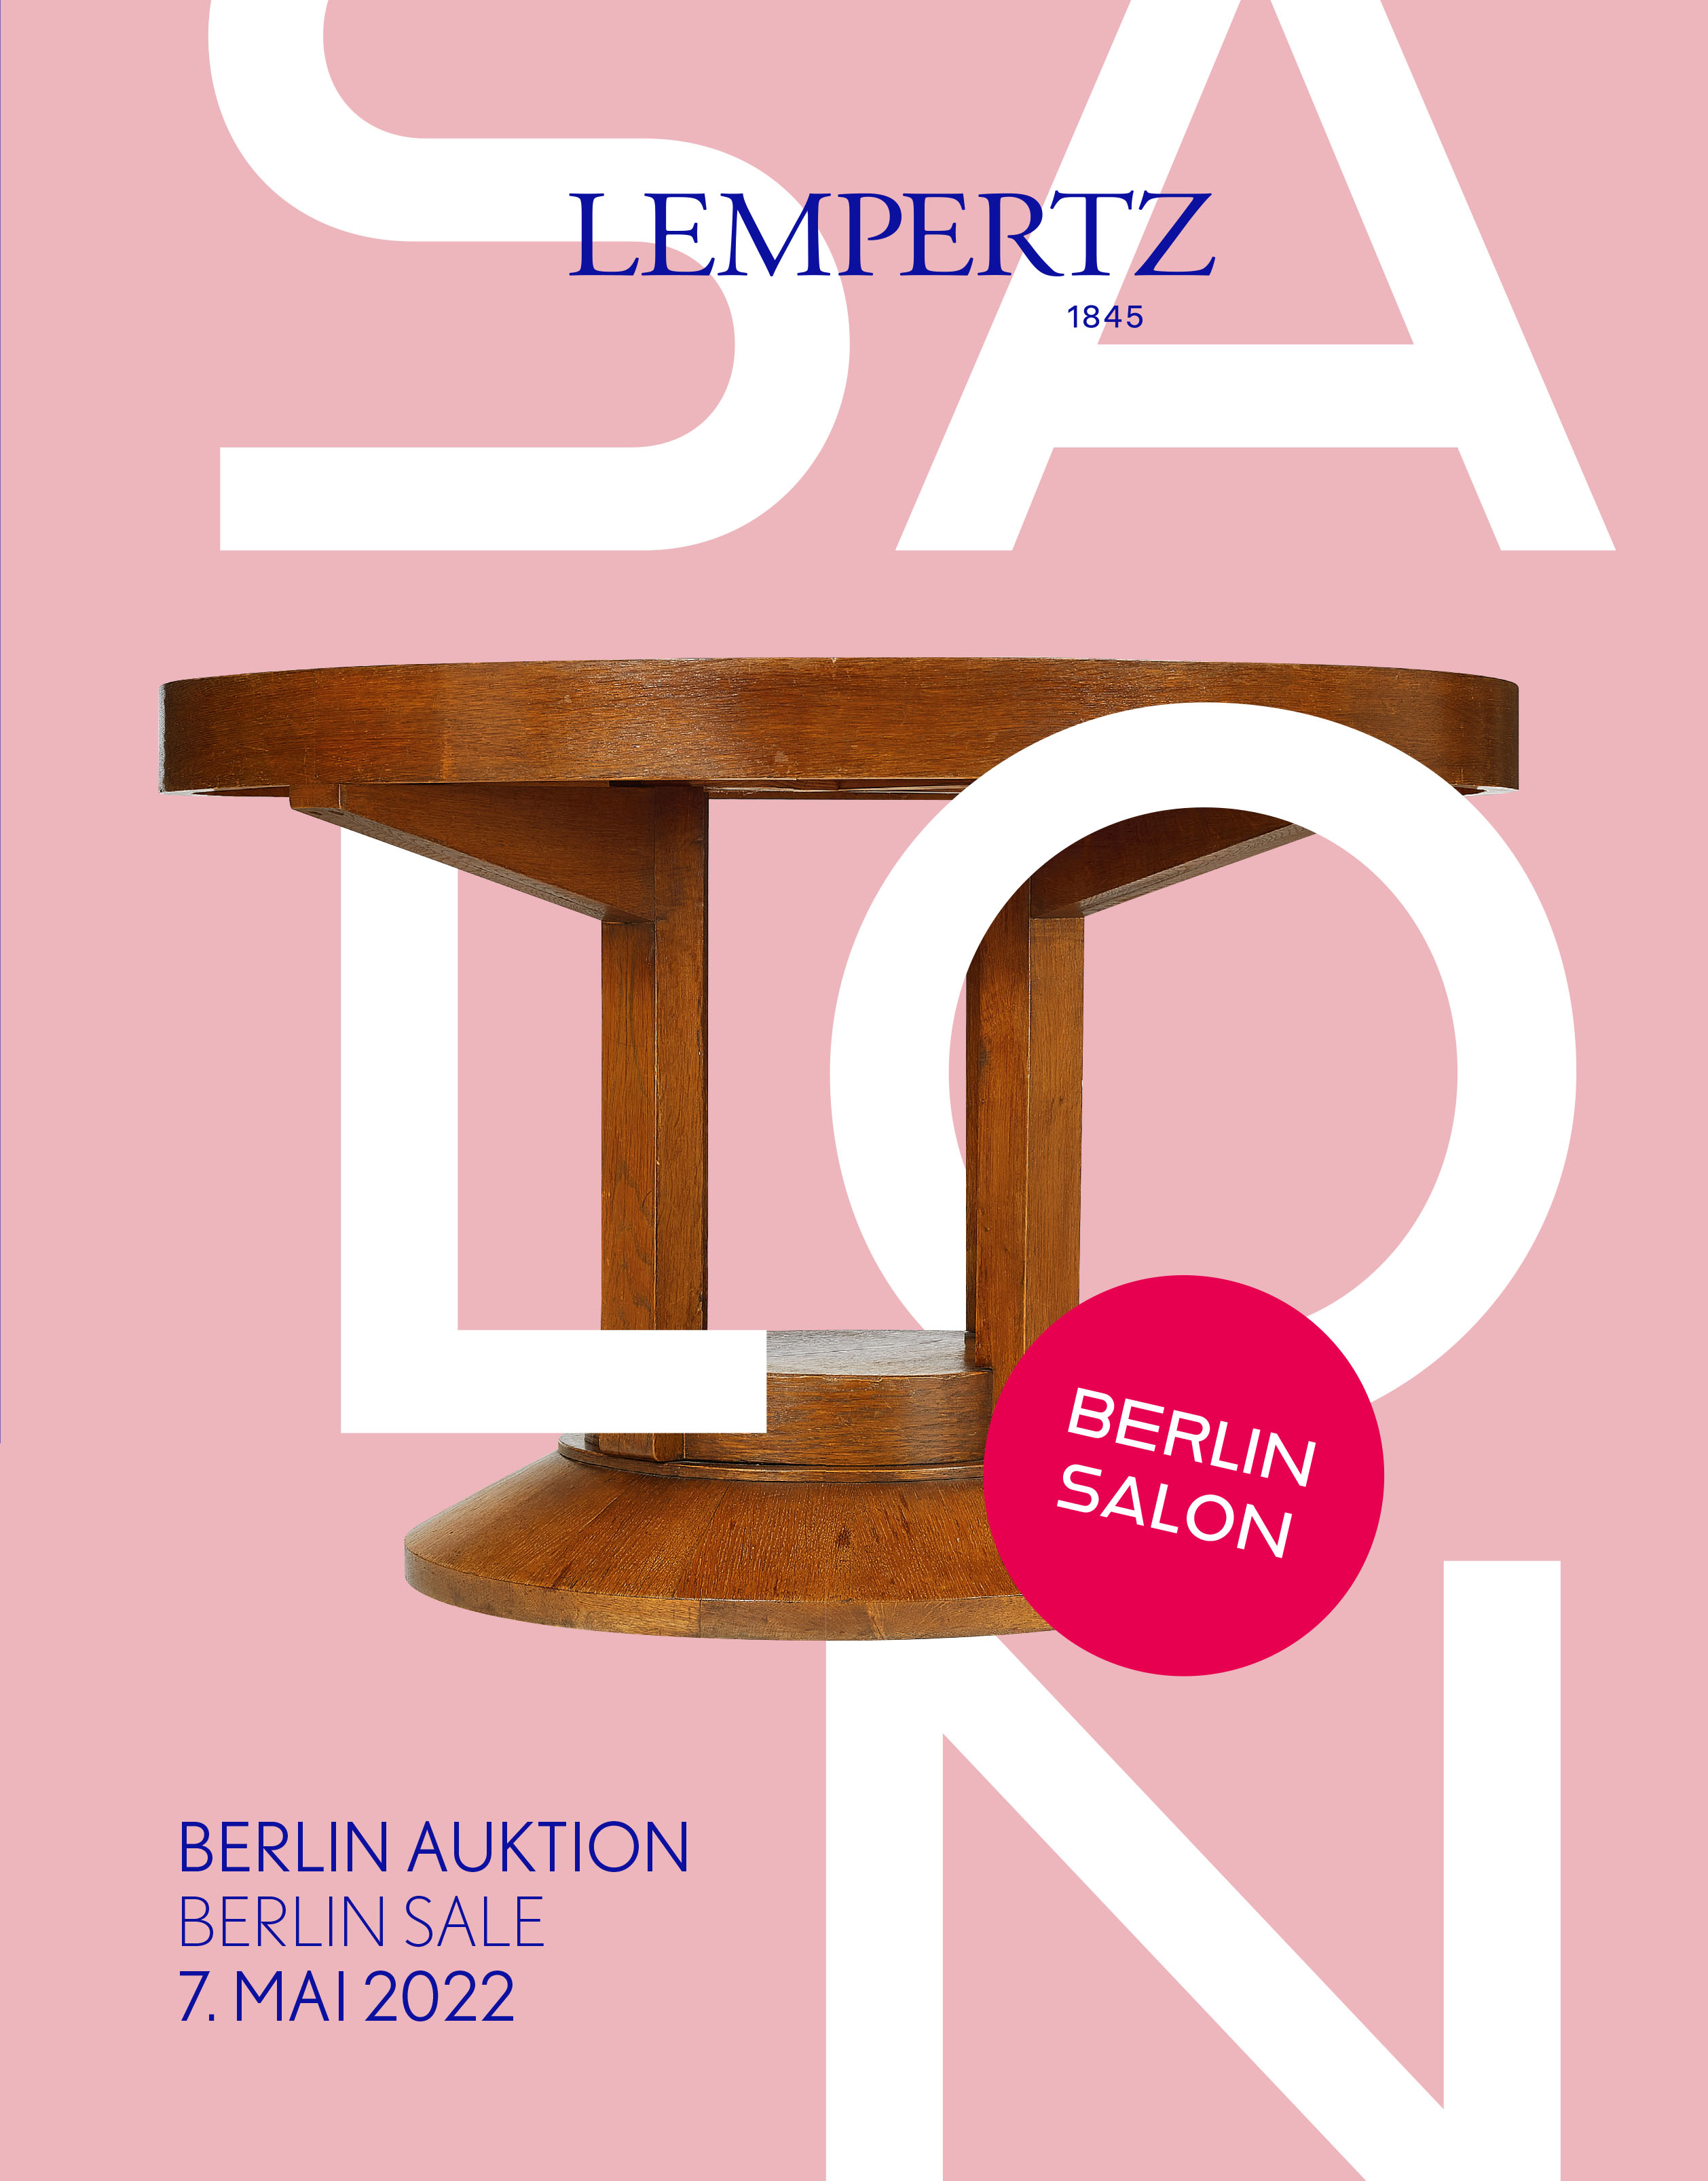 Auction house - Berlin Sale Salon - Auction Catalogue 1193 – Auction House Lempertz